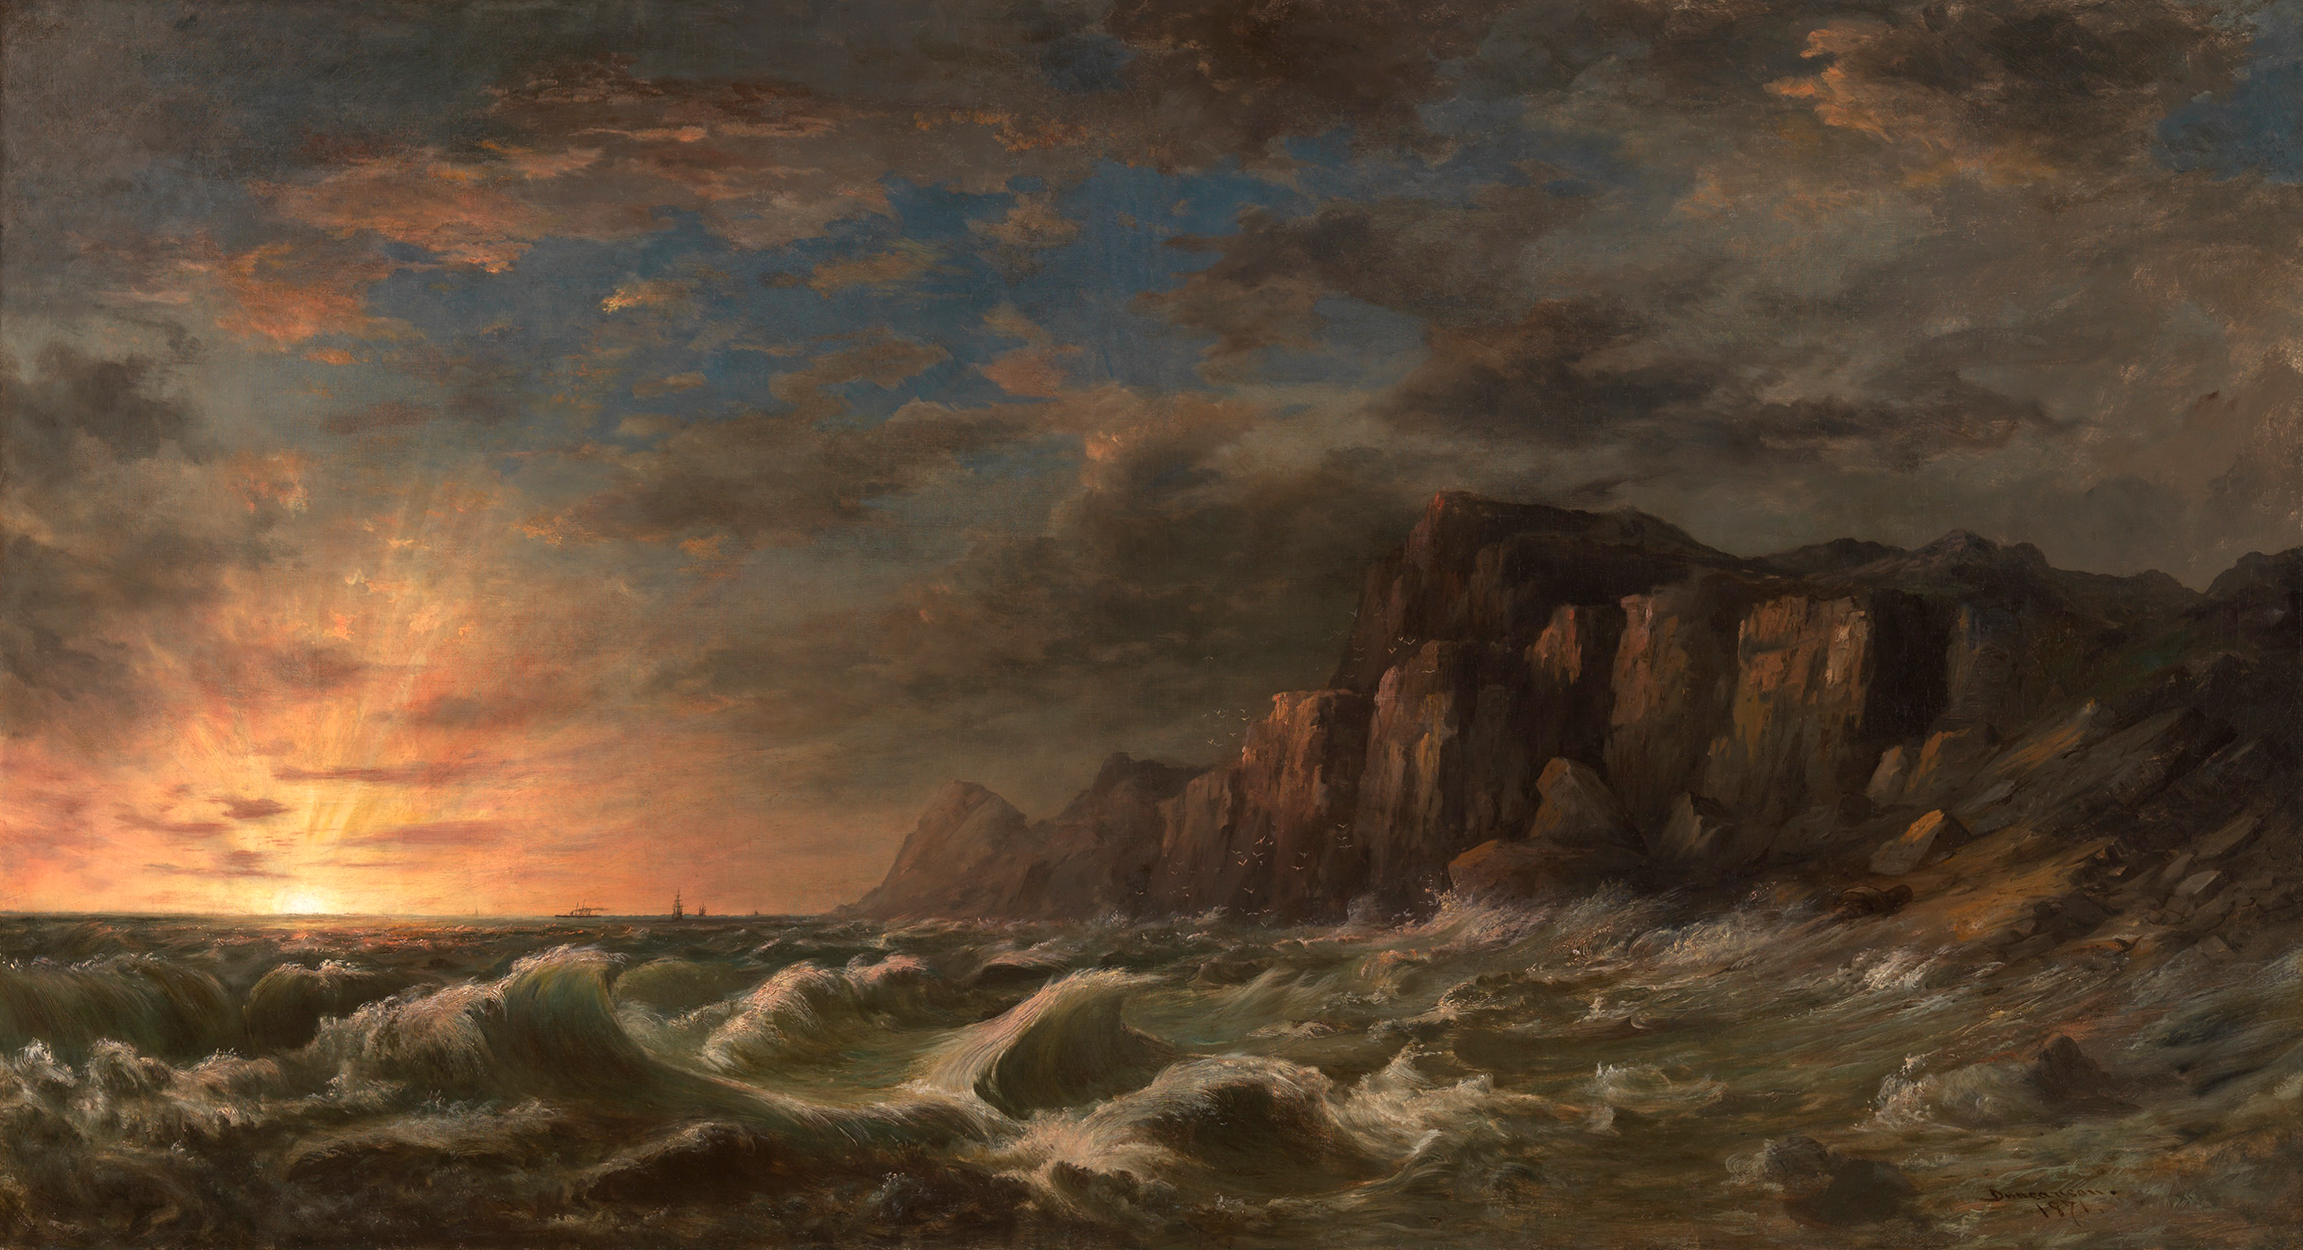 غروب على ساحل نيو إنجلاند by Robert Duncanson - 1871 م - ٥ر١٦٩ في ٩٢ سم 